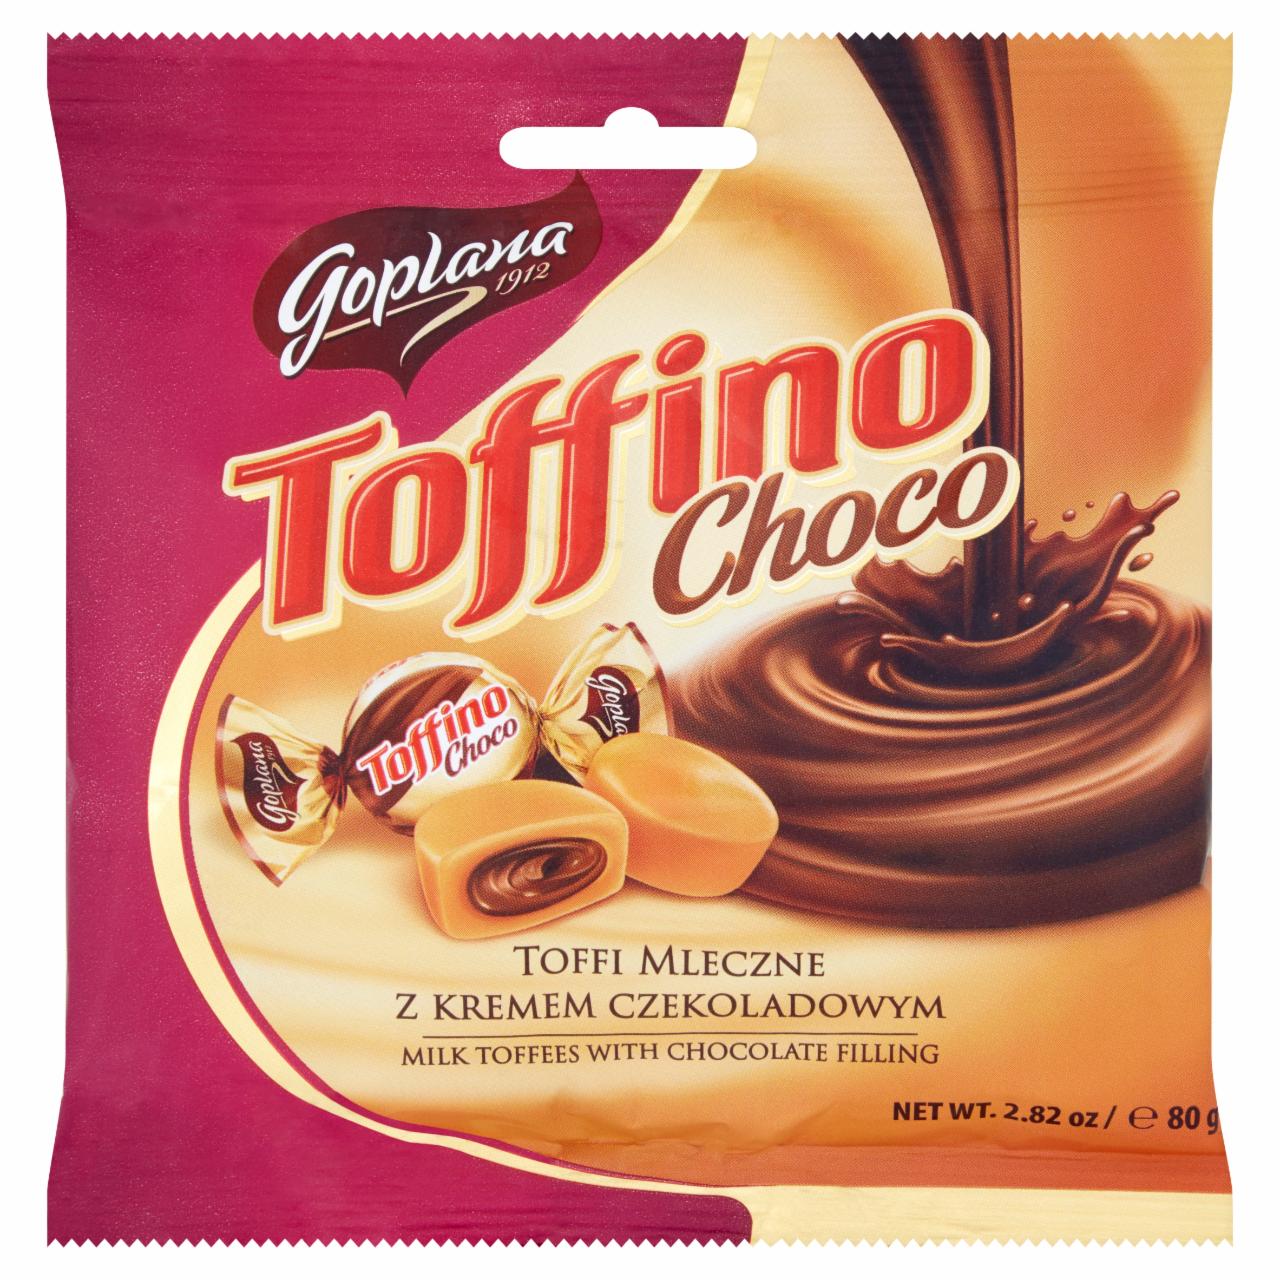 Zdjęcia - Goplana Toffino Choco Toffi mleczne z kremem czekoladowym 80 g